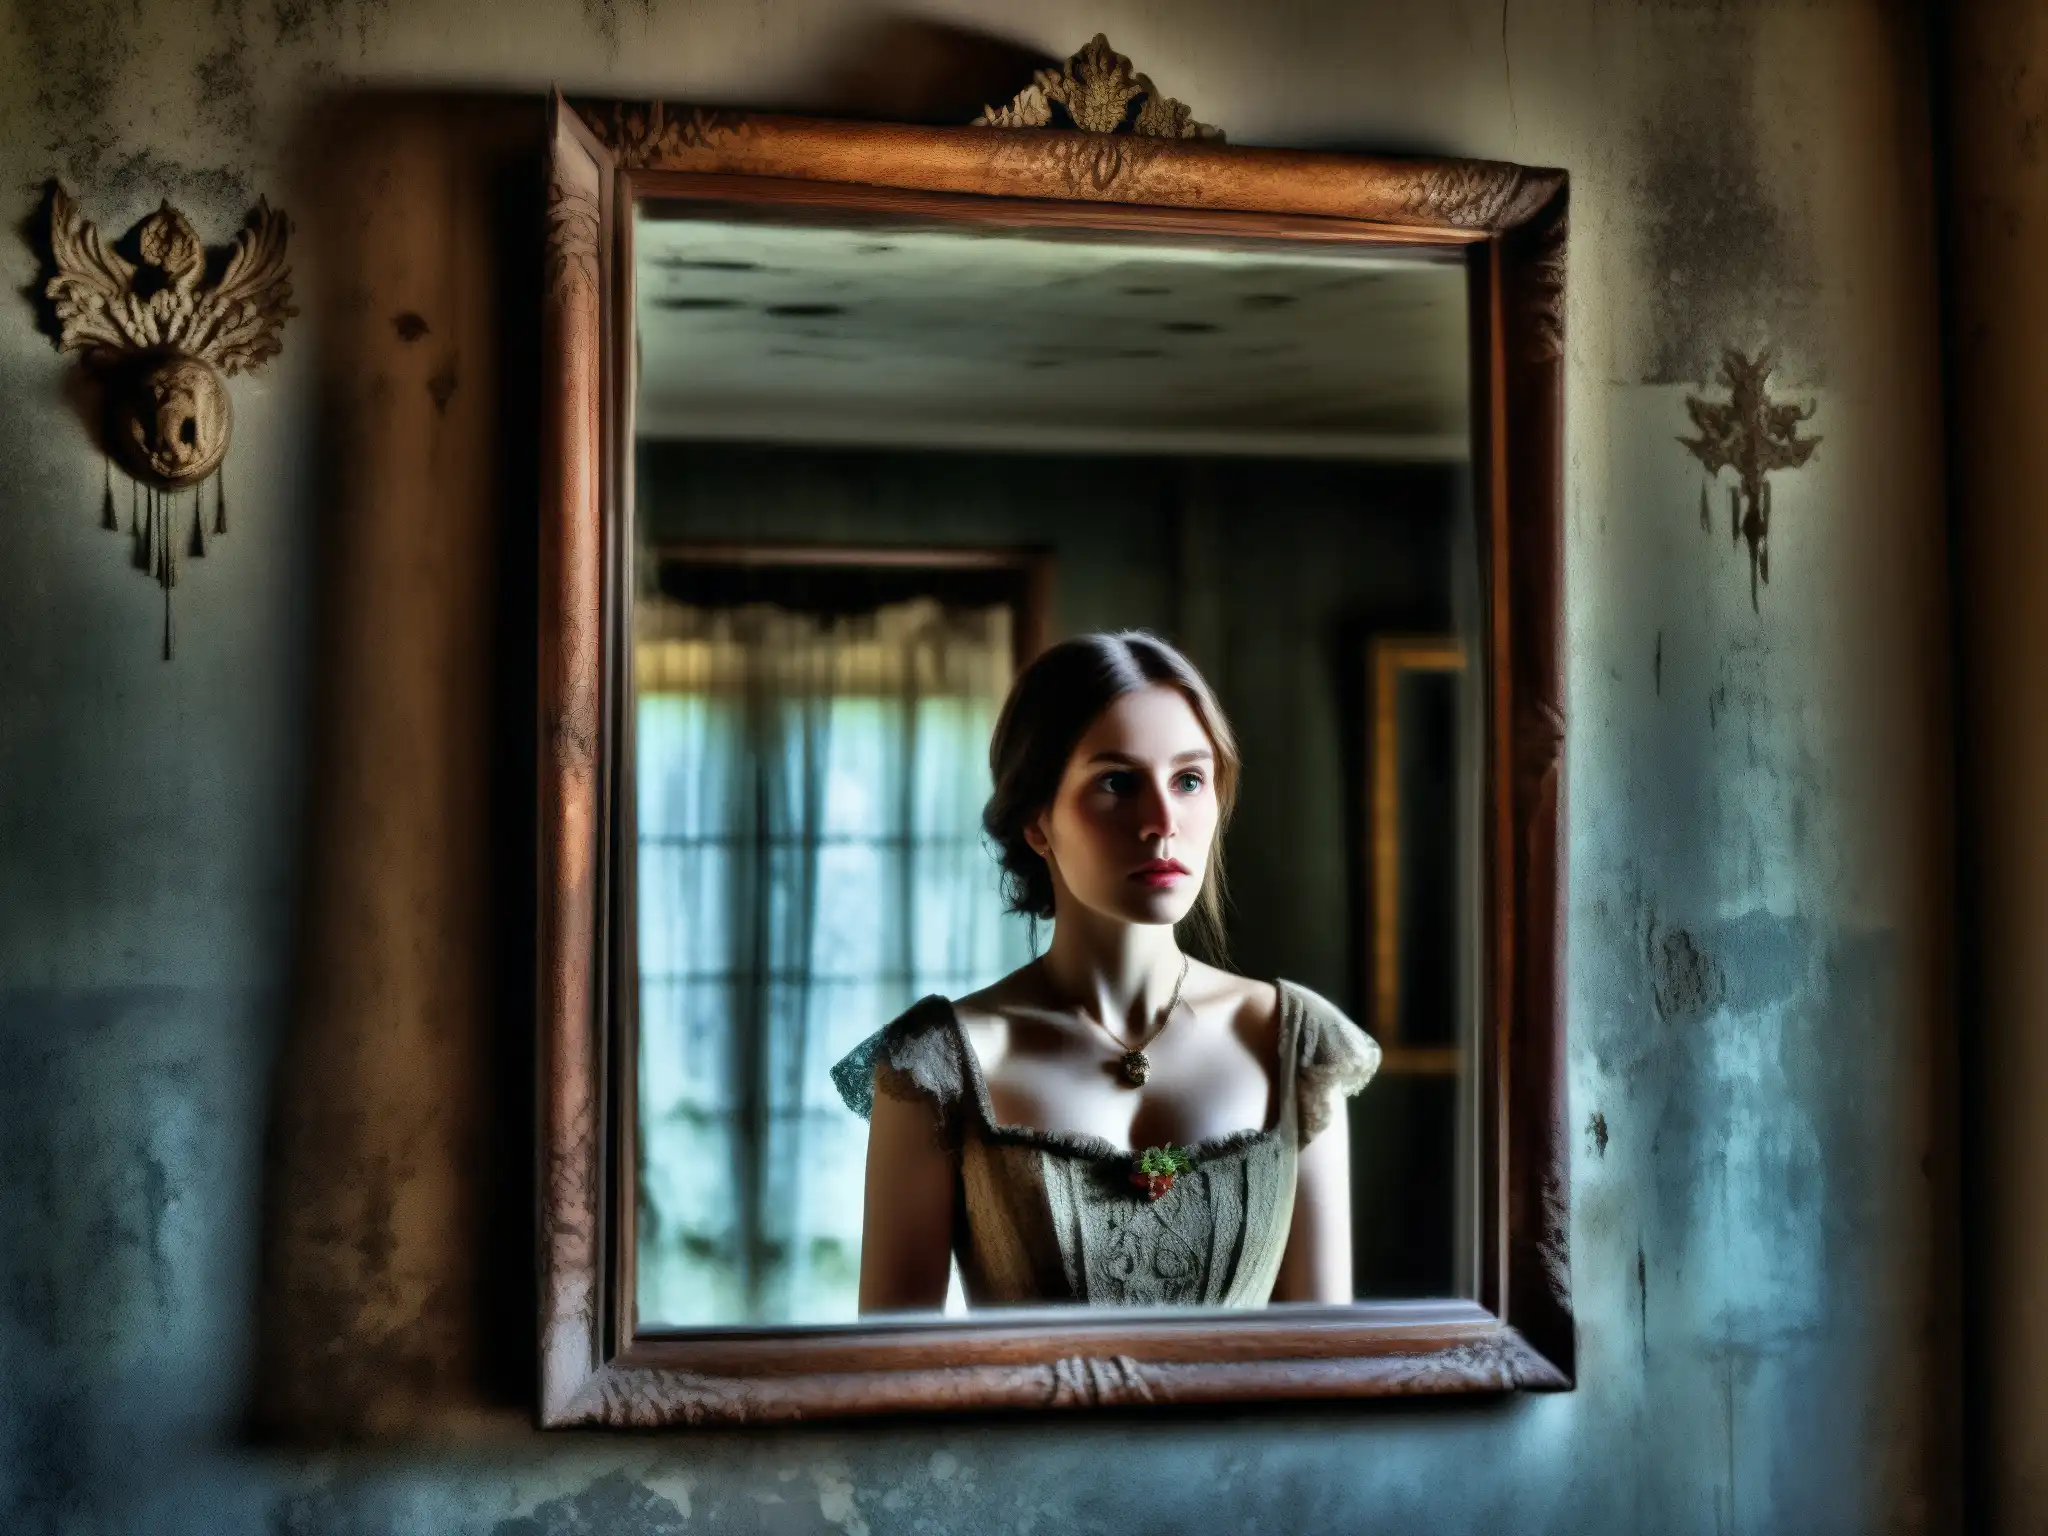 Reflejo fantasmal de una mujer en un espejo envejecido, evocando el origen histórico de Bloody Mary en un ambiente misterioso y desolado